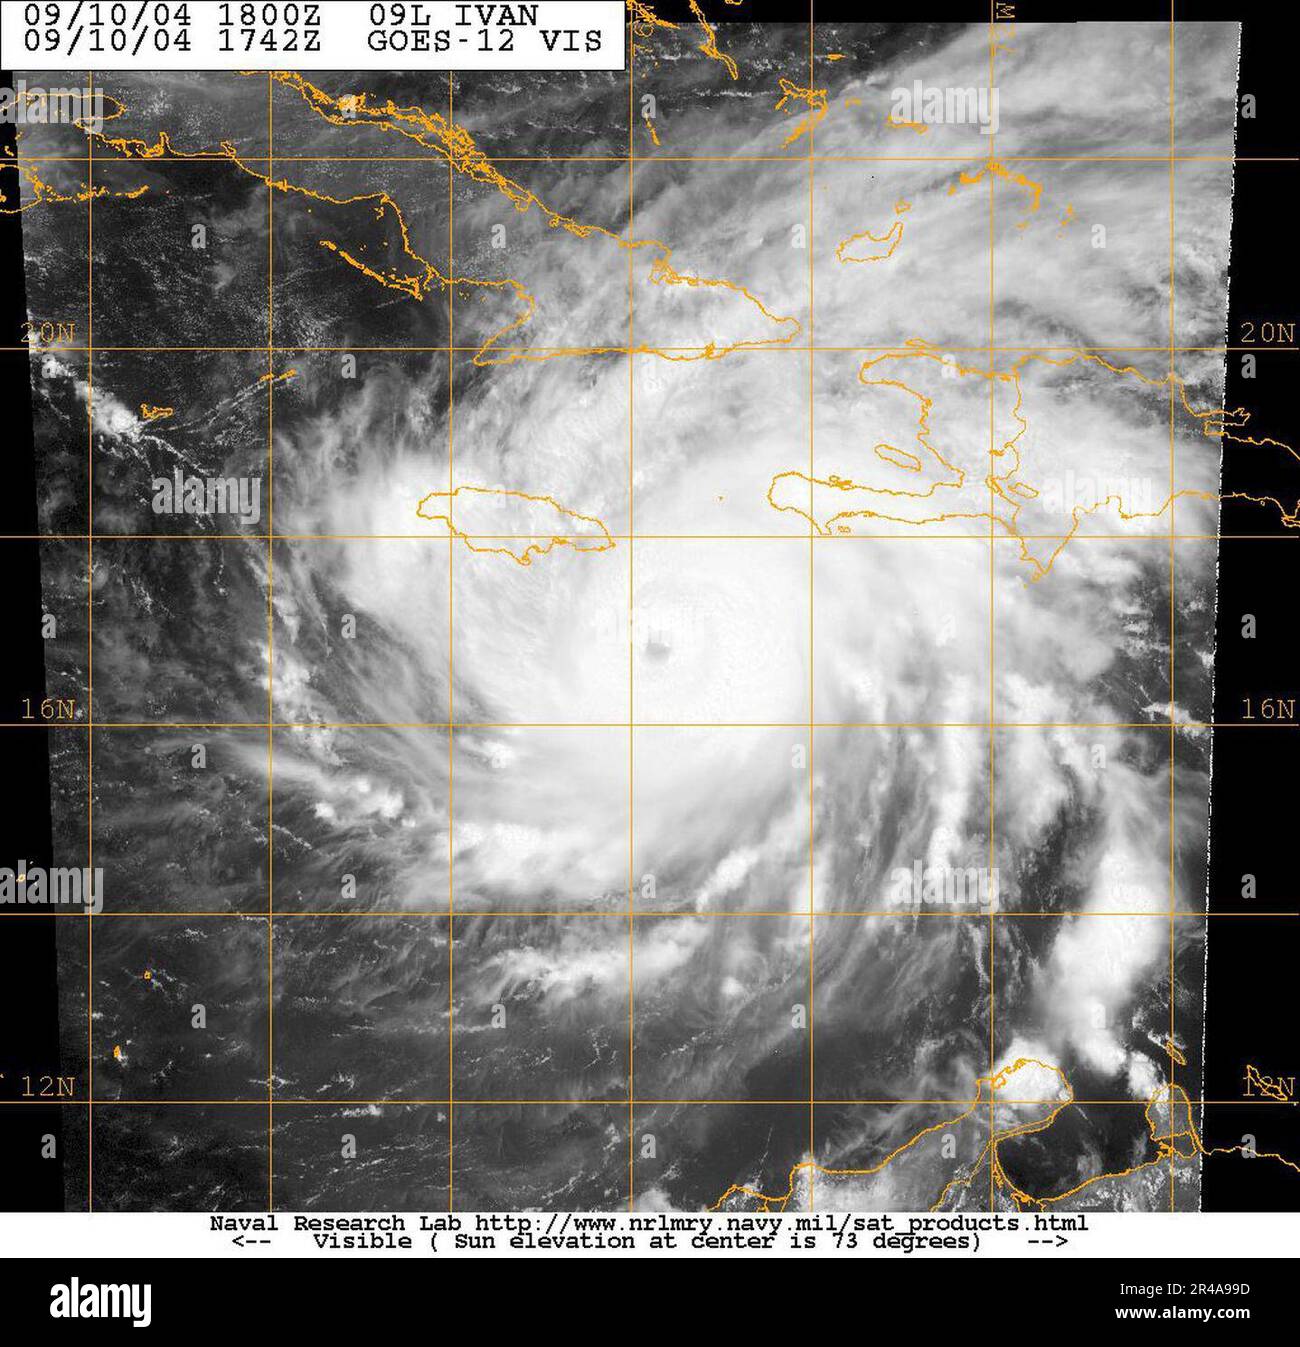 Imagen satelital de la Marina de LOS ESTADOS UNIDOS tomada del satélite GOES-12 del huracán Iván aproximadamente a las 1400 EST Foto de stock